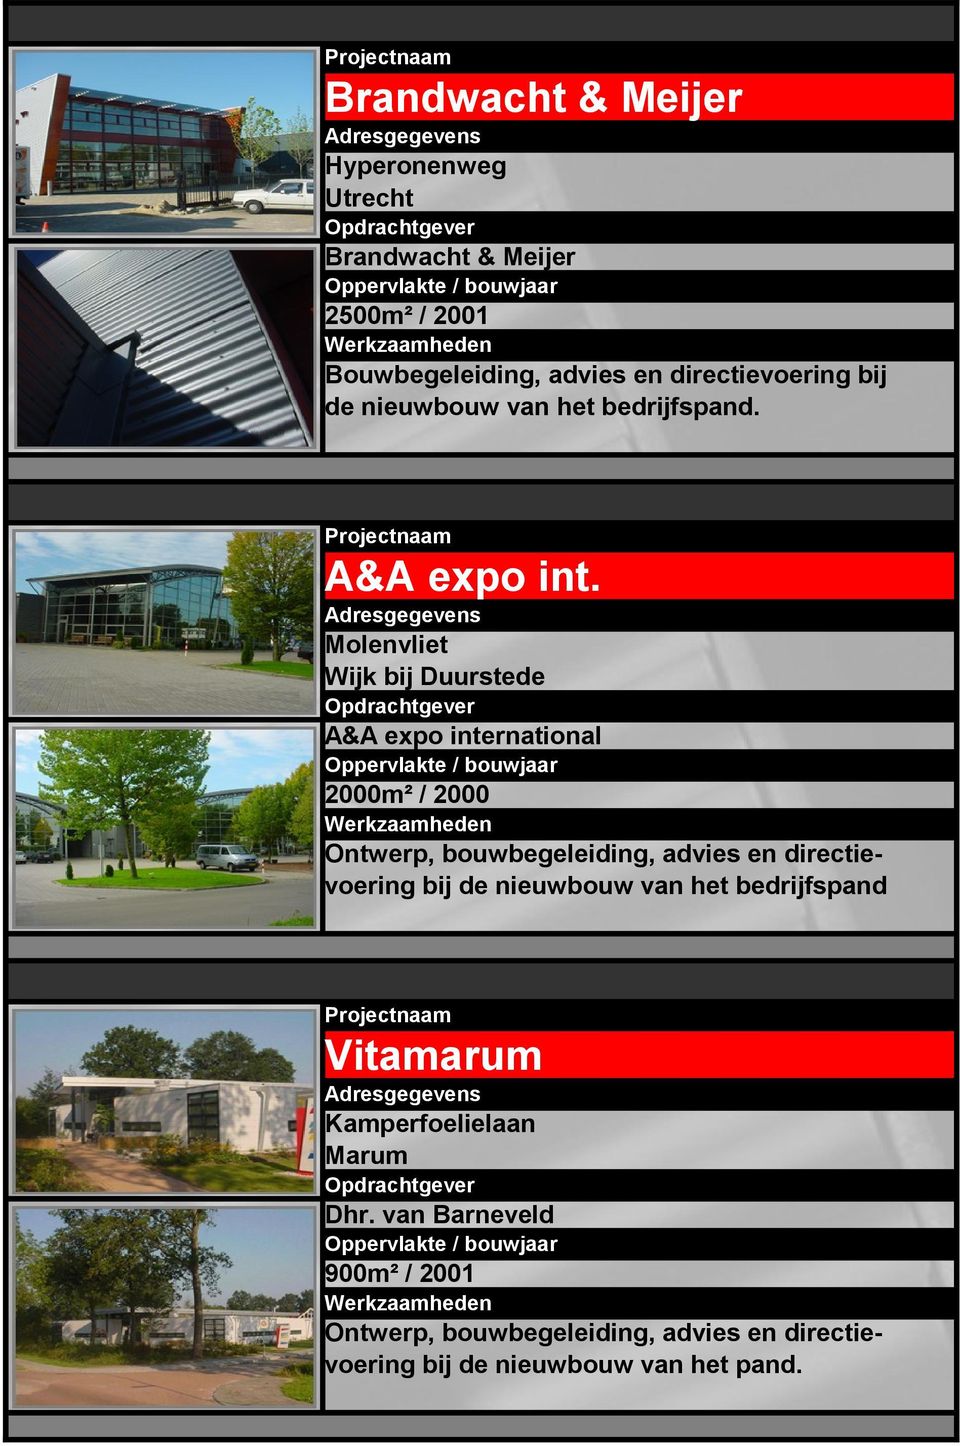 Molenvliet Wijk bij Duurstede A&A expo international 2000m² / 2000 Ontwerp, bouwbegeleiding, advies en directievoering